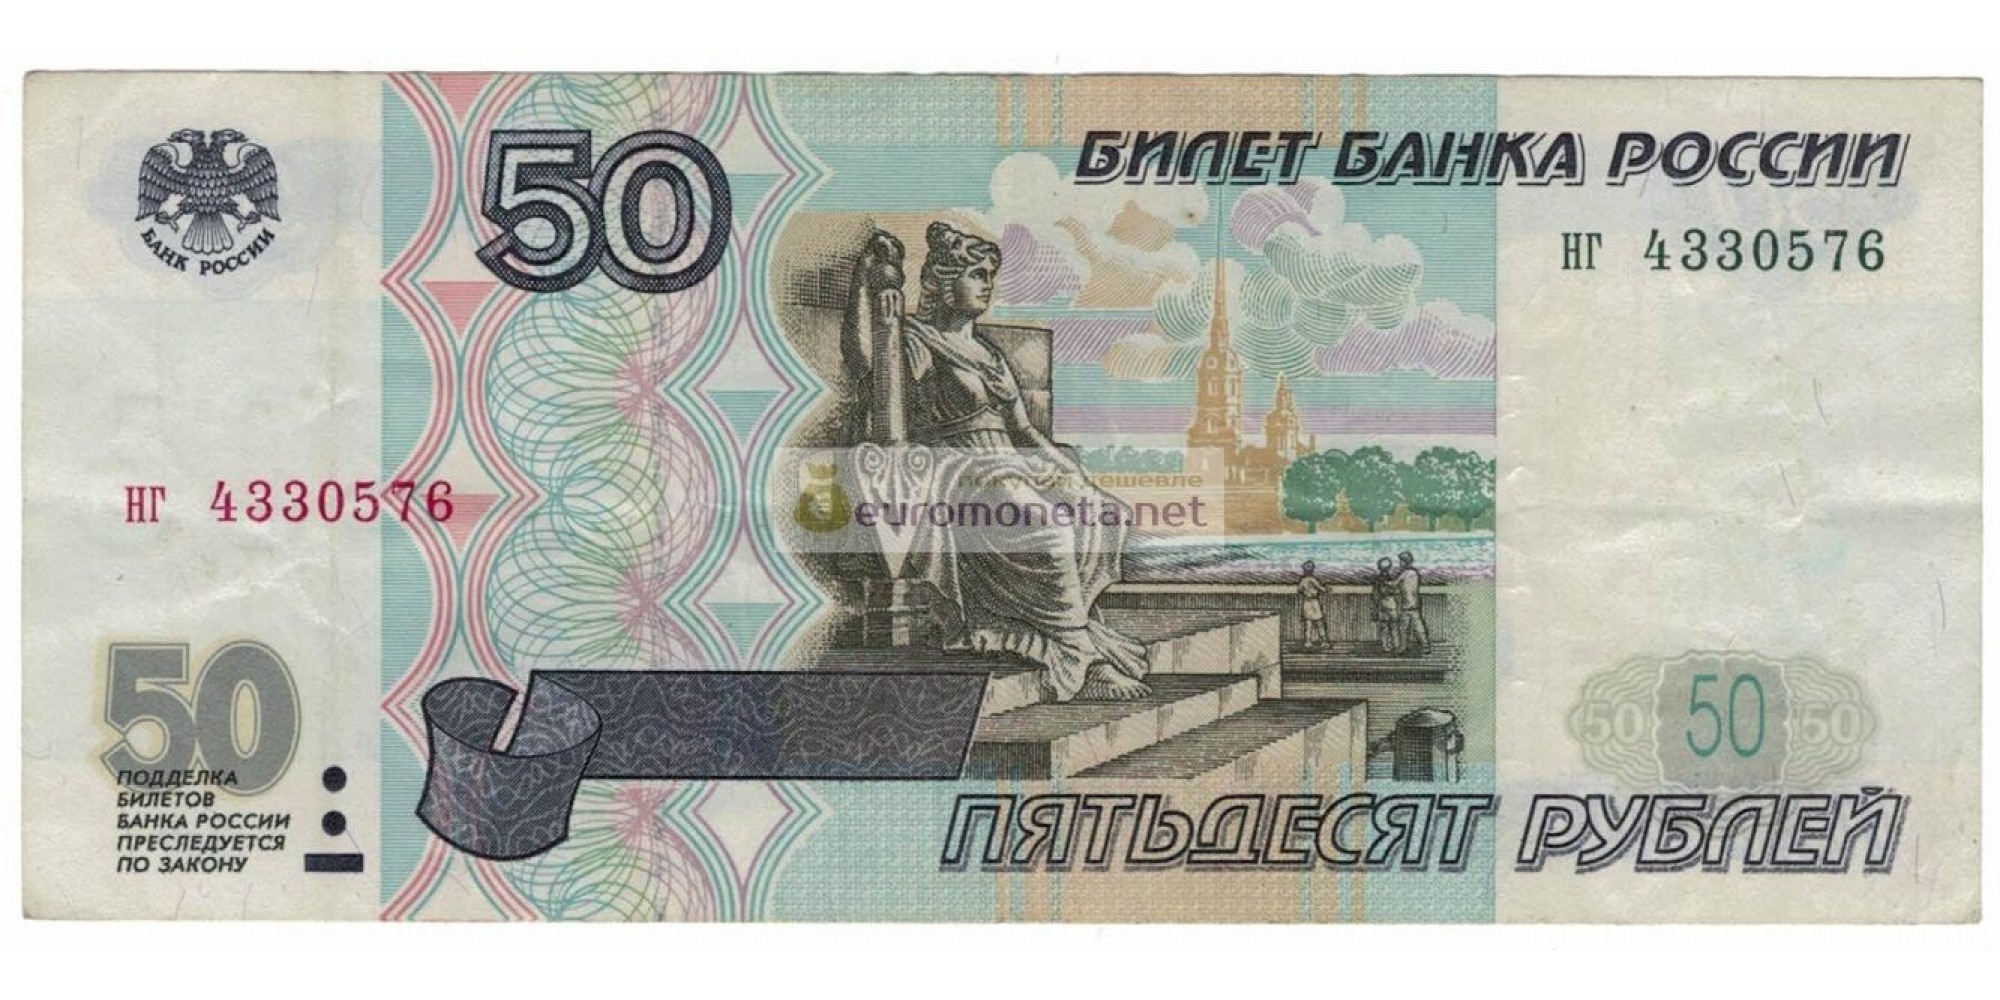 Россия 50 рублей 1997 год без модификации серия нг 4330576